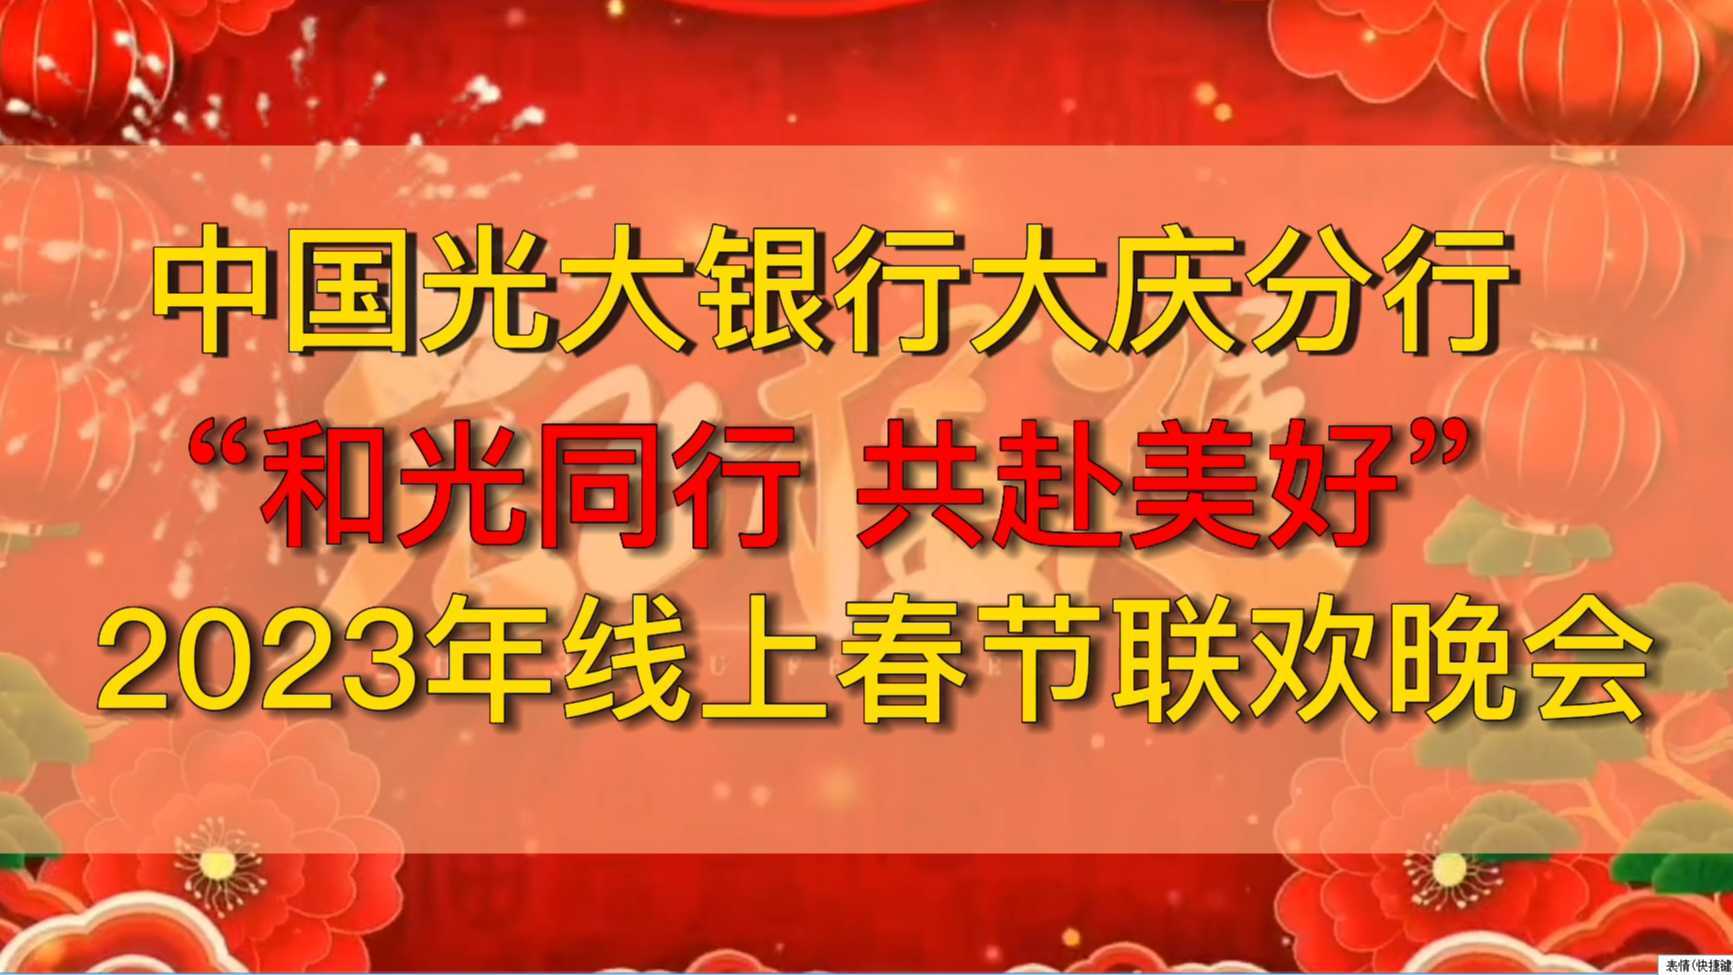 中国光大银行大庆分行“和光同行 共赴美好” 2023年线上春节联欢晚会